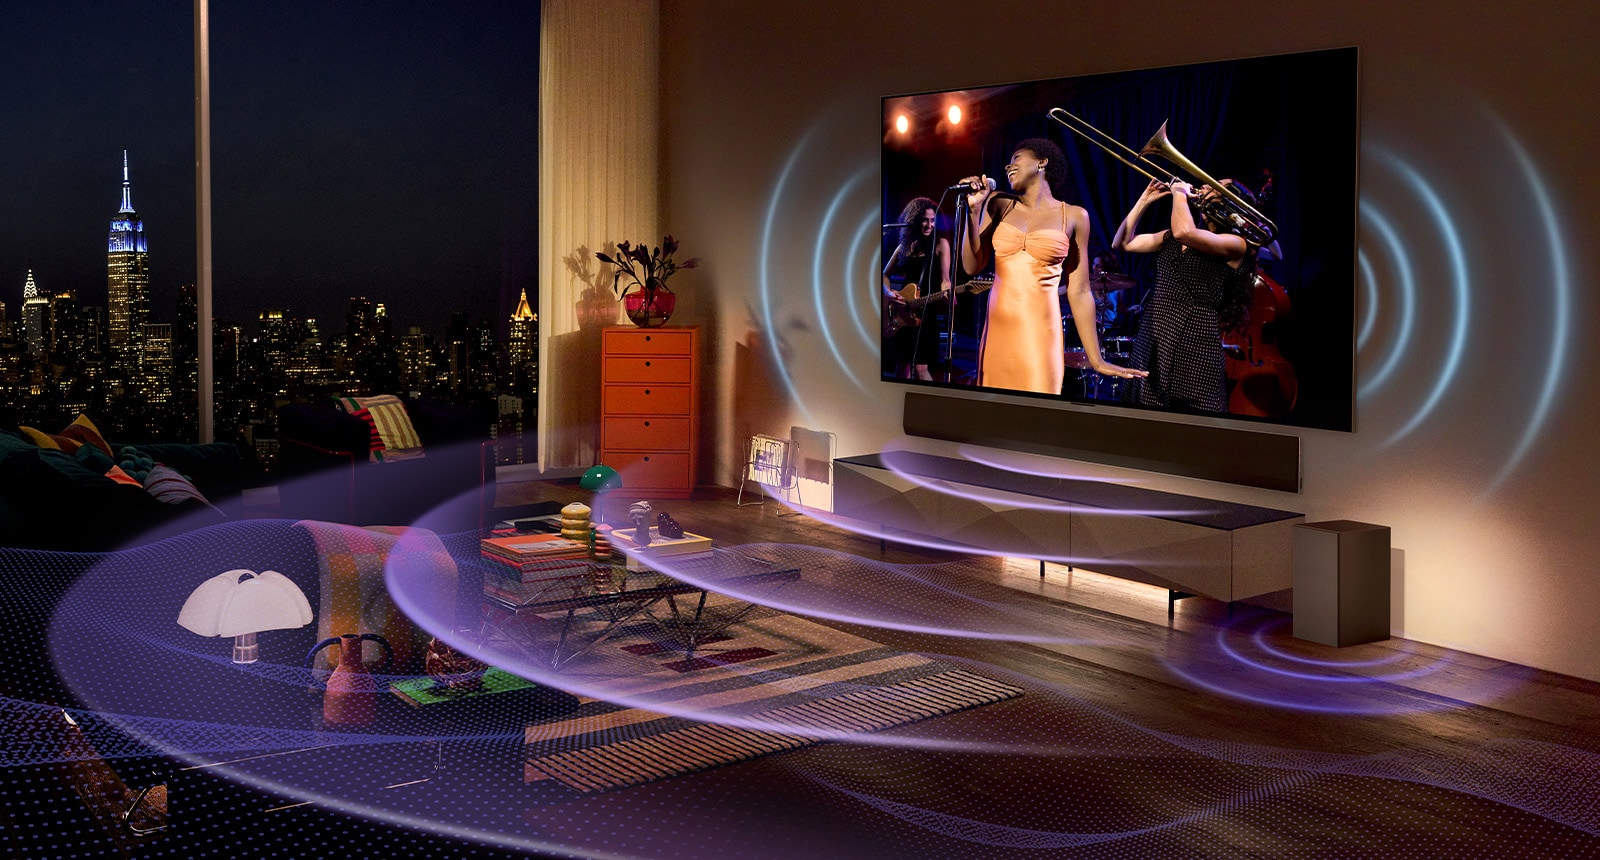 Slika televizorja LG OLED v sobi, ki prikazuje glasbeni koncert.  Modre ukrivljene črte opisujejo zvok televizorja, vijolične ukrivljene črte pa predstavljajo zvok Soundbara, ki zapolnjuje prostor.